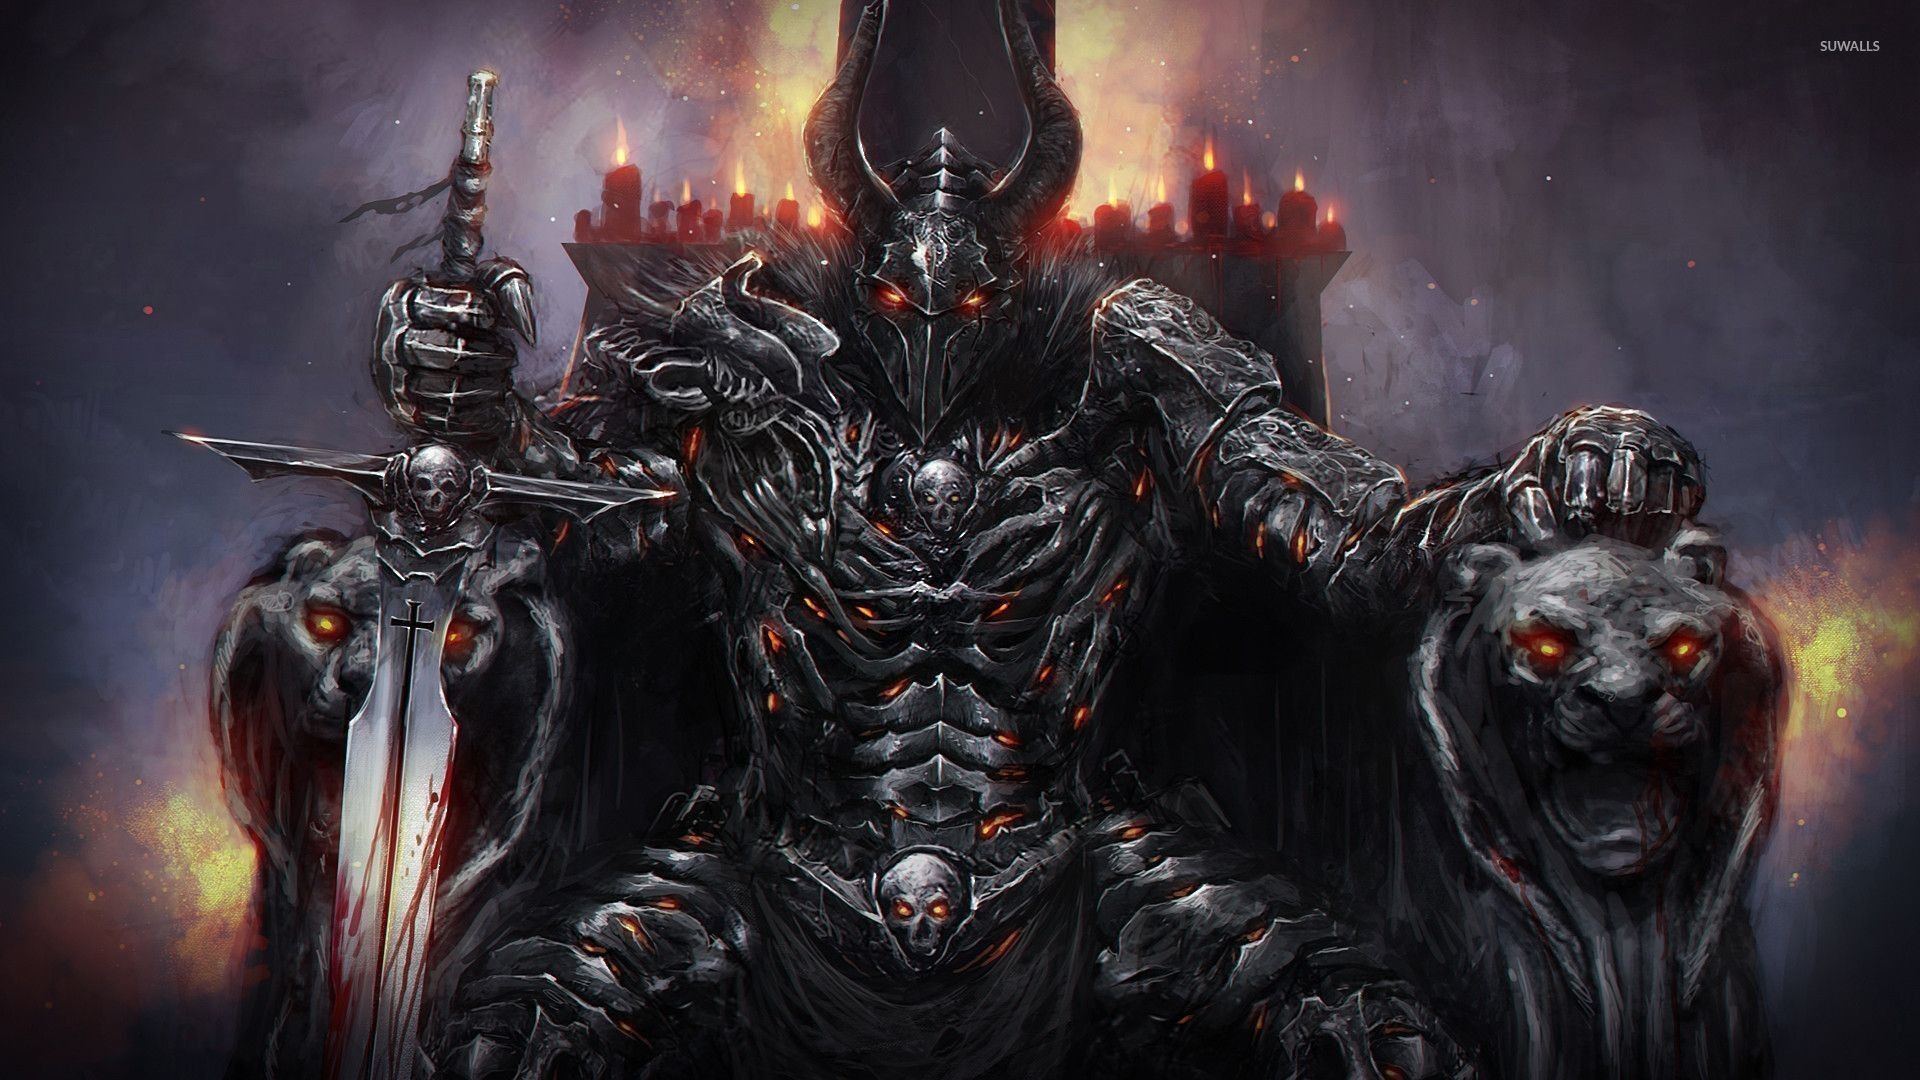 Demon King Wallpaper Free Demon King Background